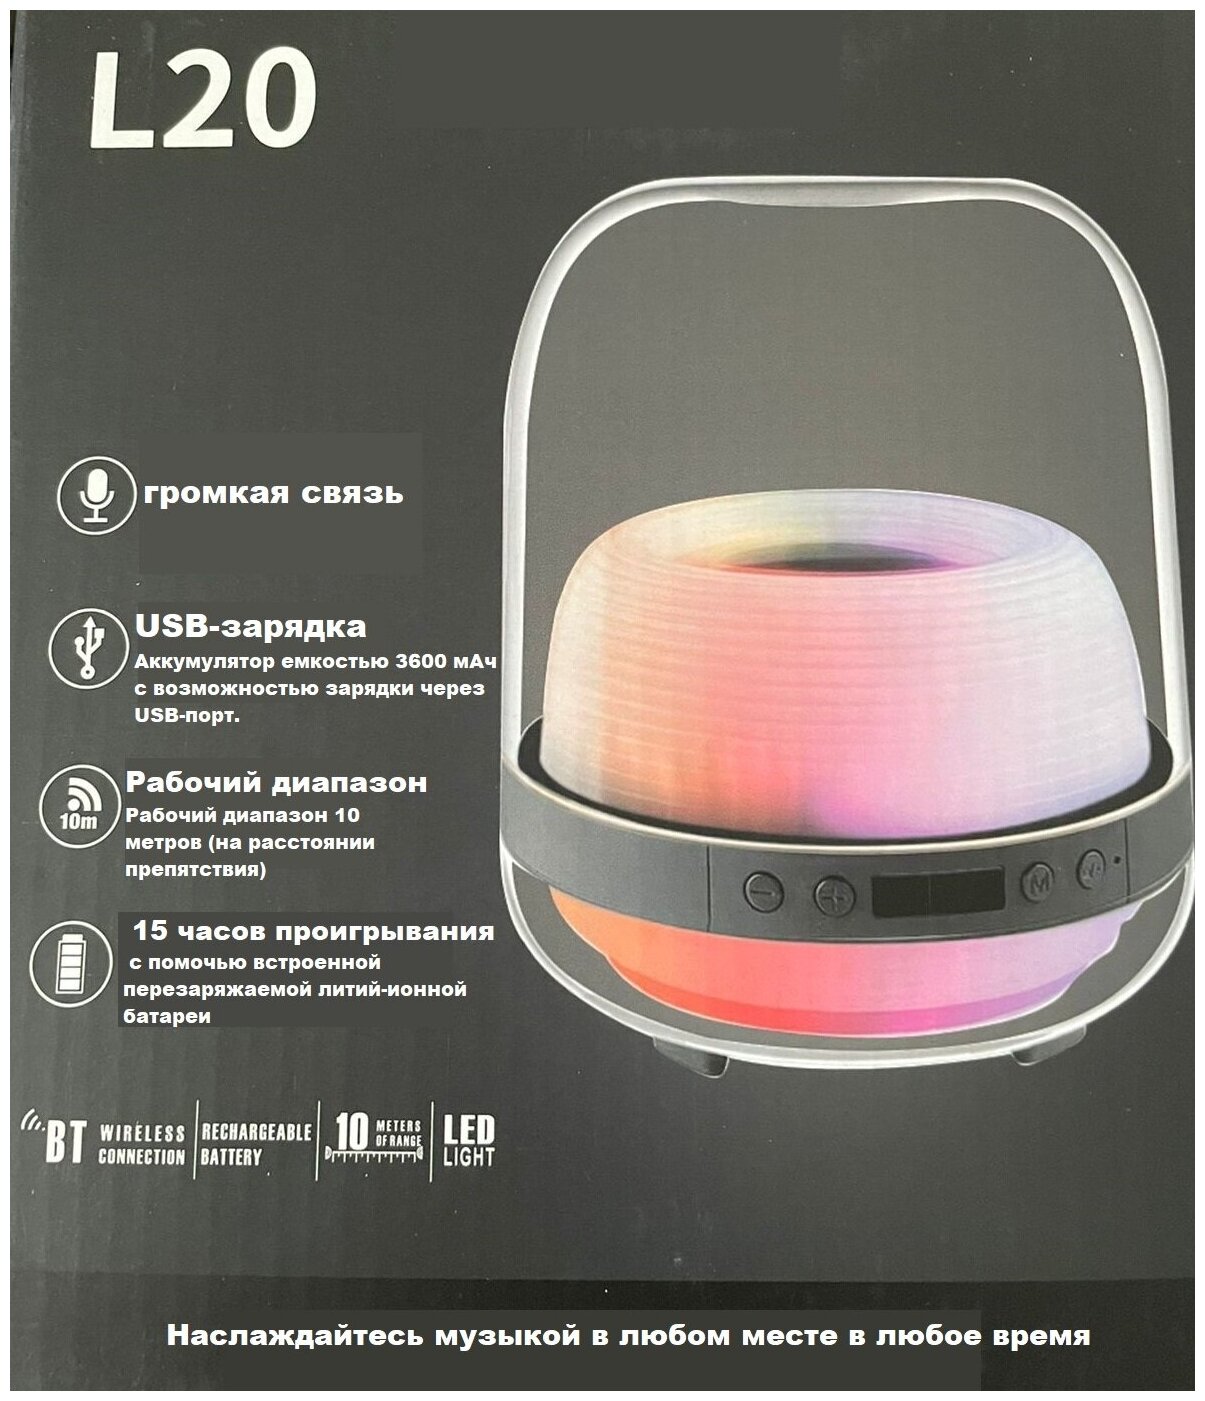 Беспроводная колонка со световыми эффектами L20 Smart LED bluetooth speaker